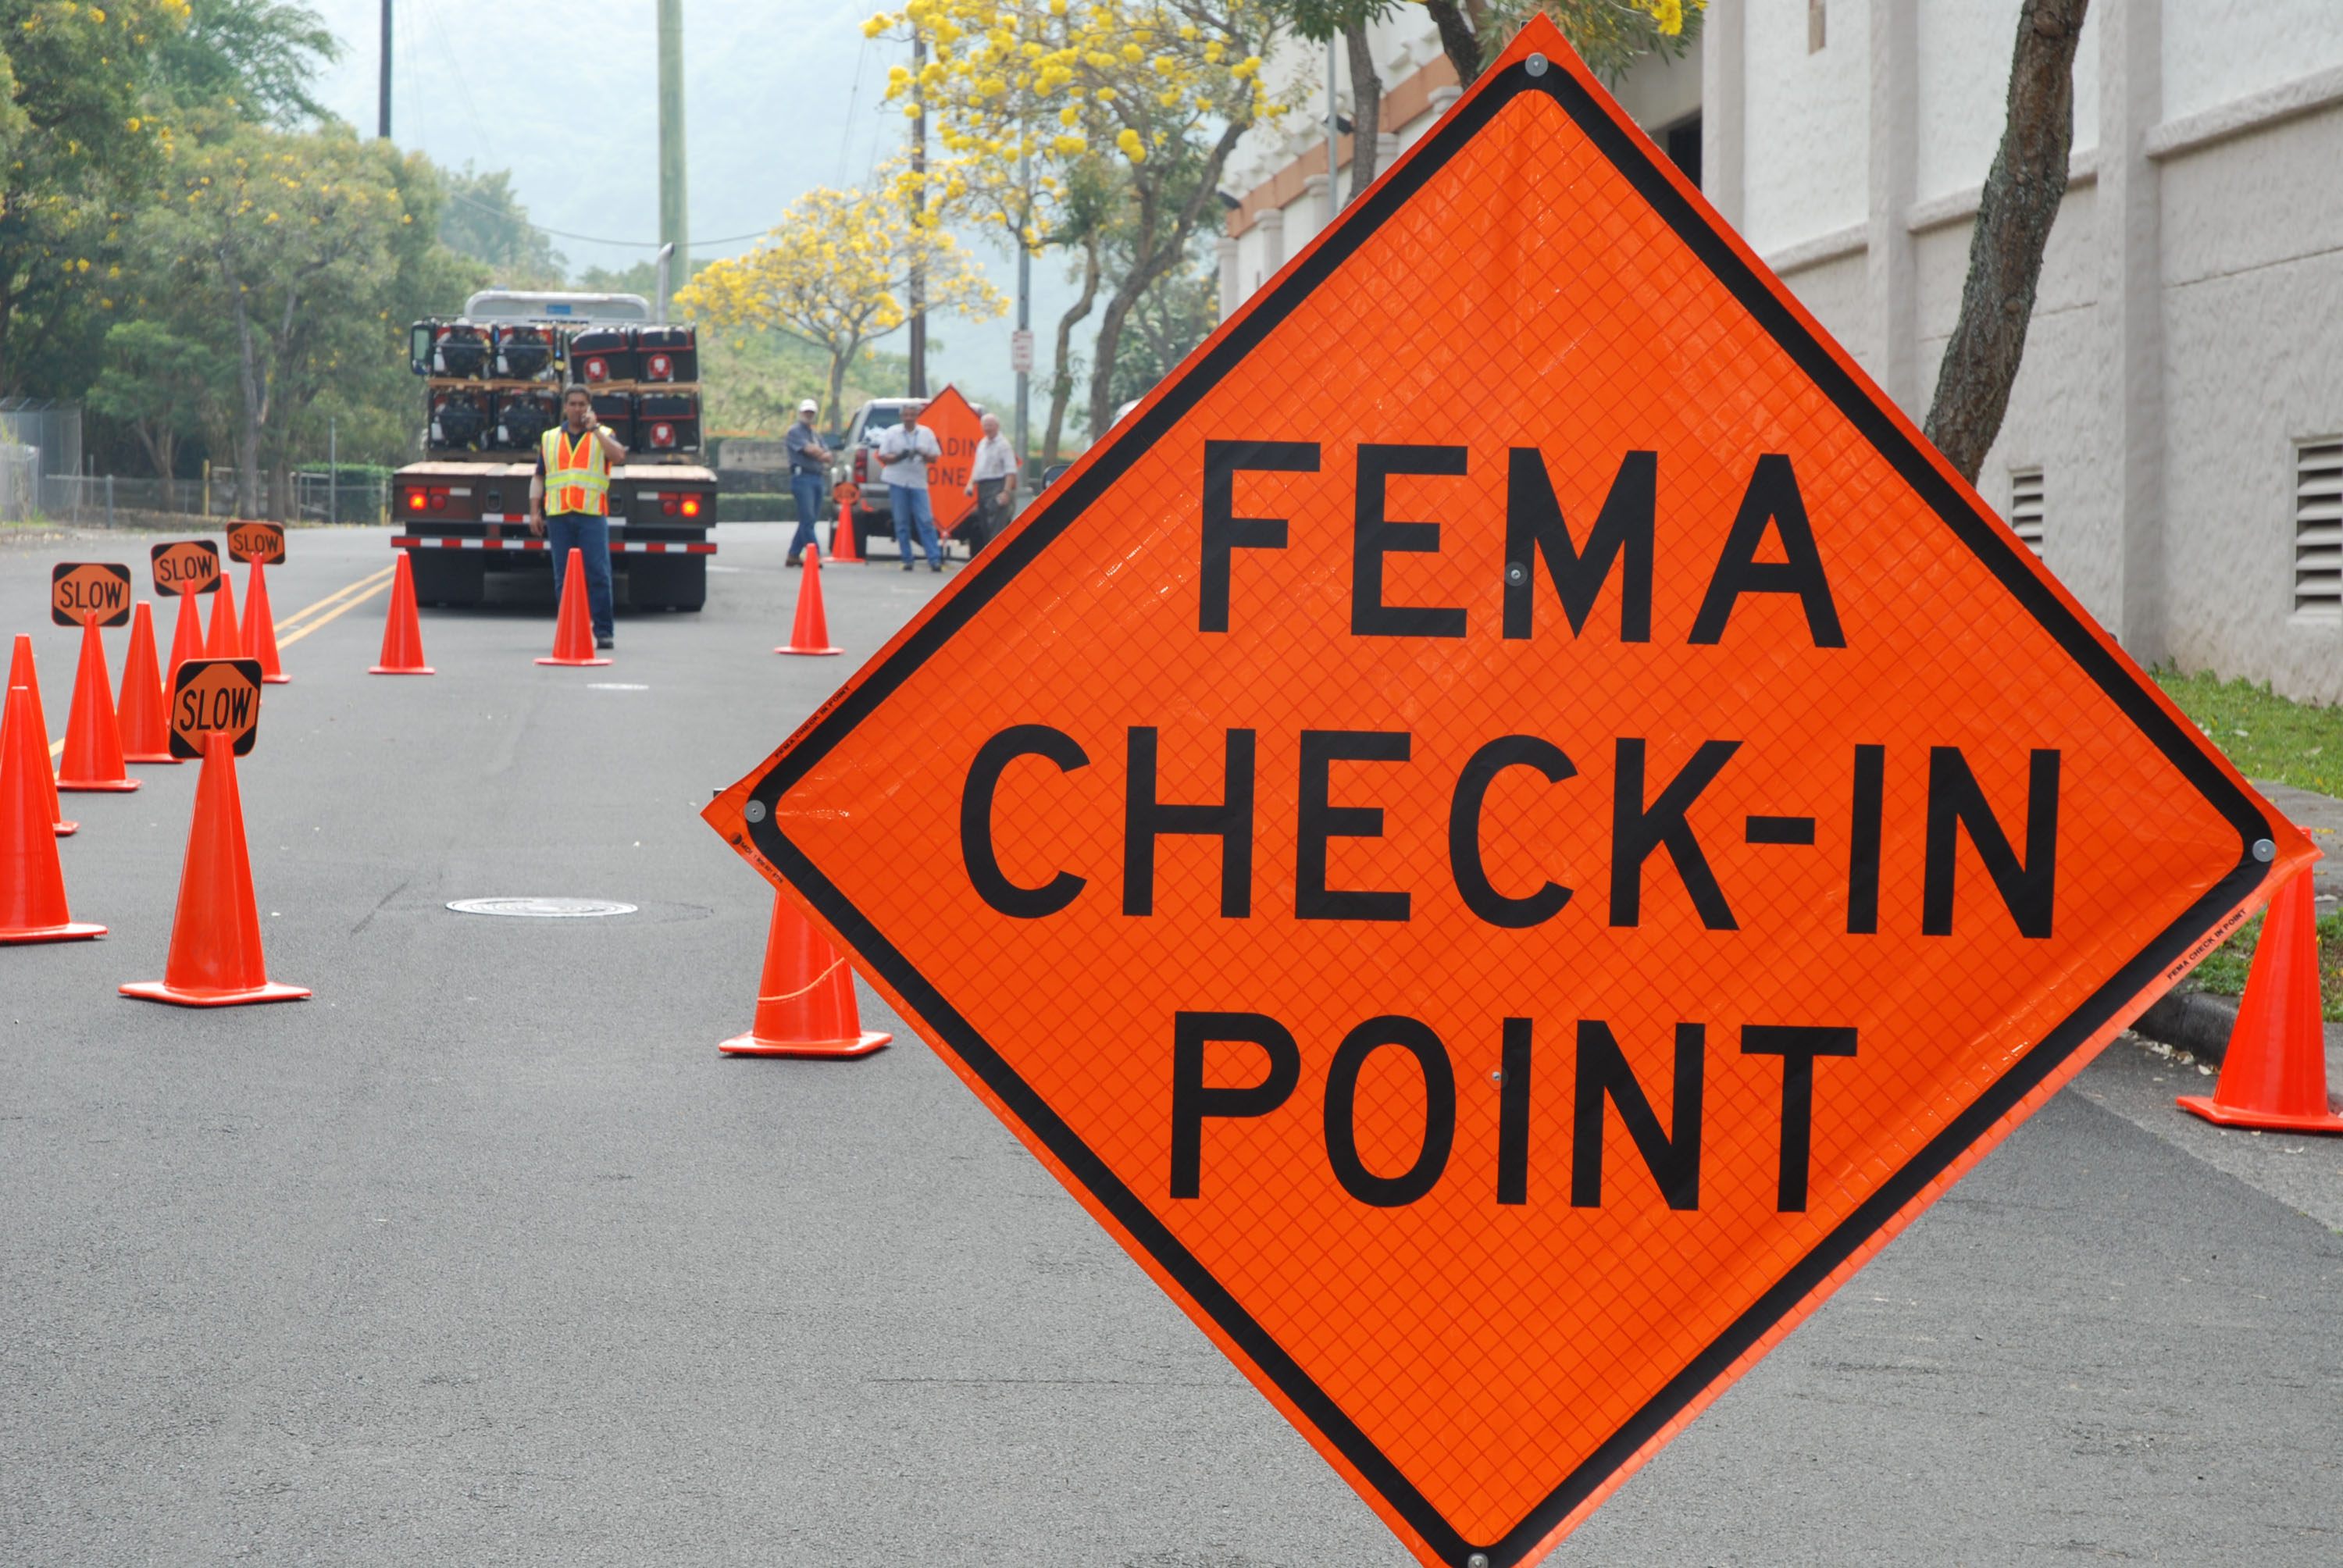 FEMA check in